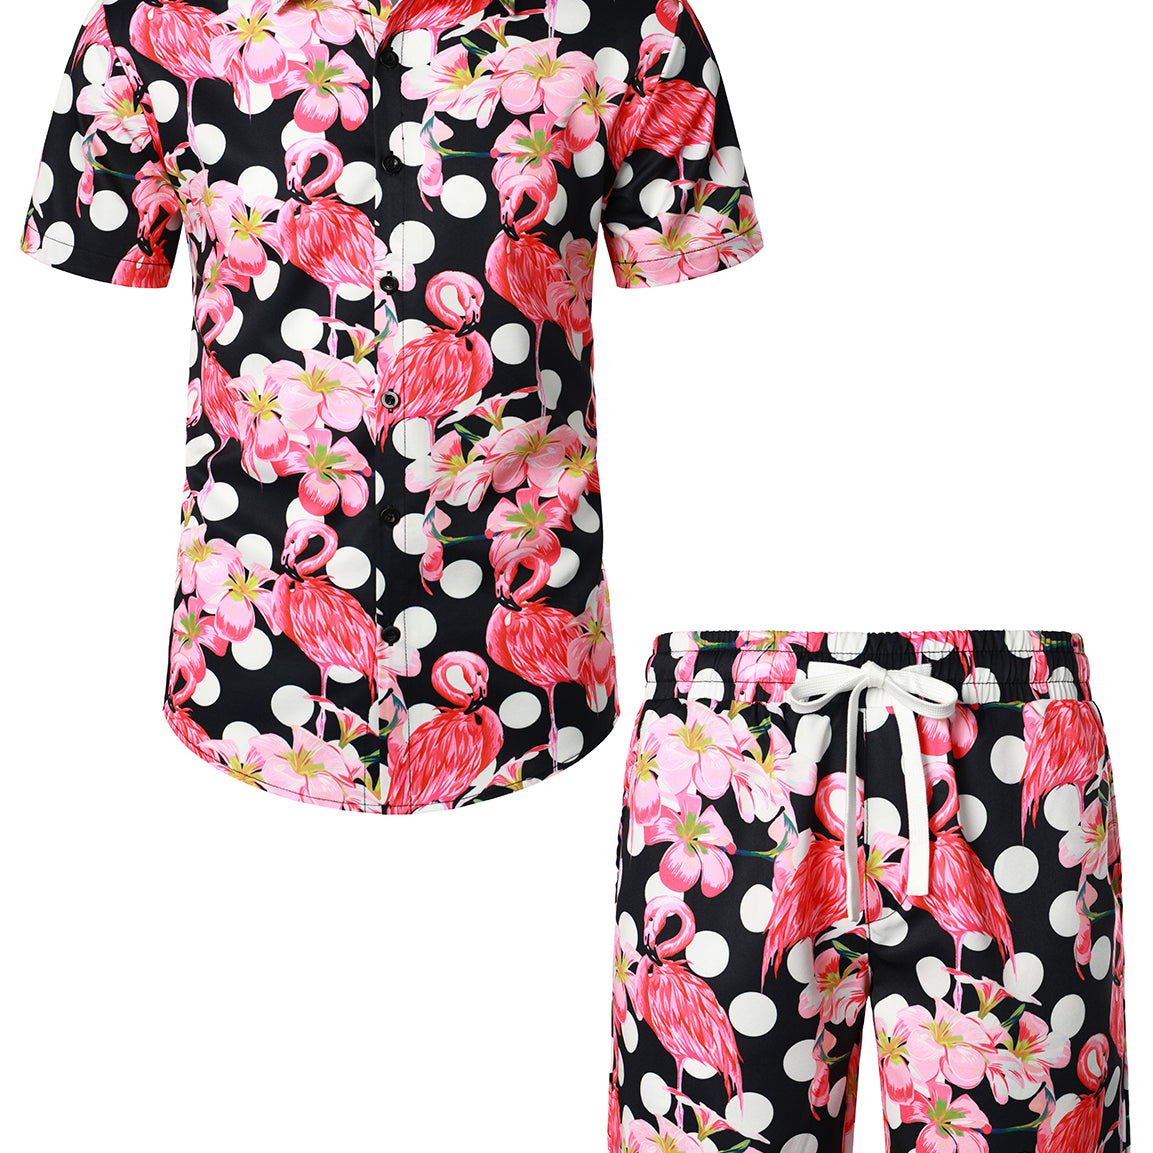 Men's Flamingo Polka Dot Pink and Black Hawaiian Outfit Shirt and Shorts Set